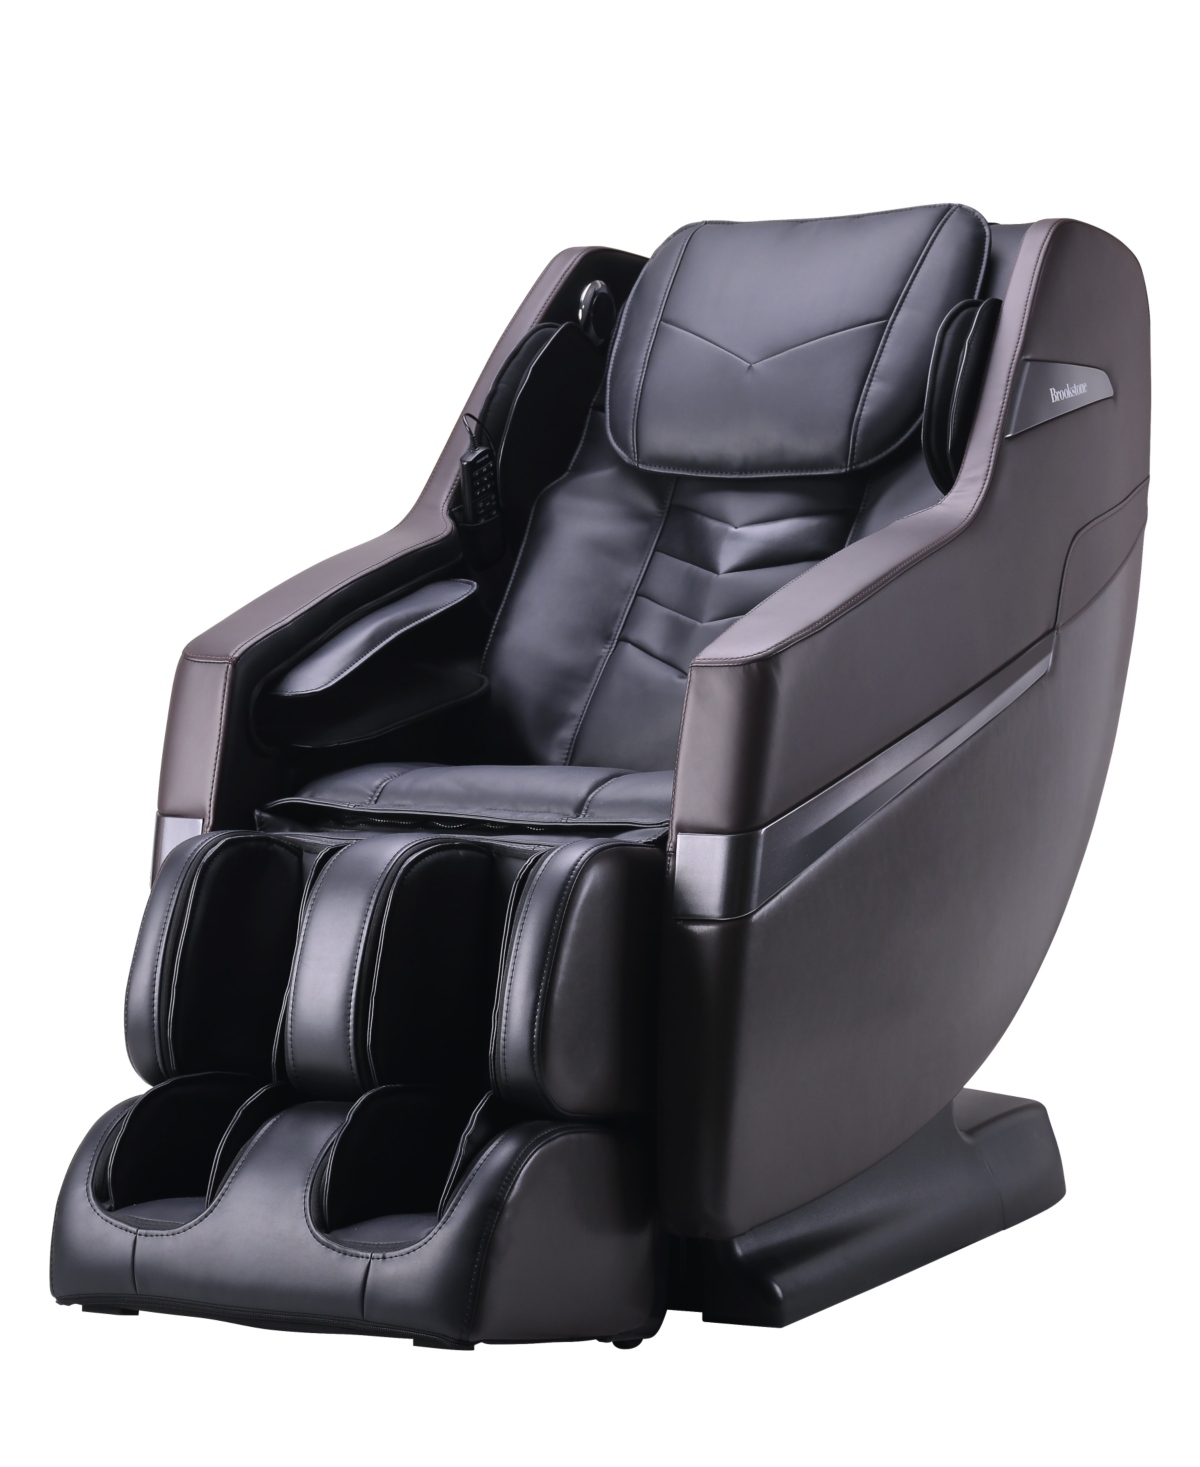 Bk-250 Massage Chair